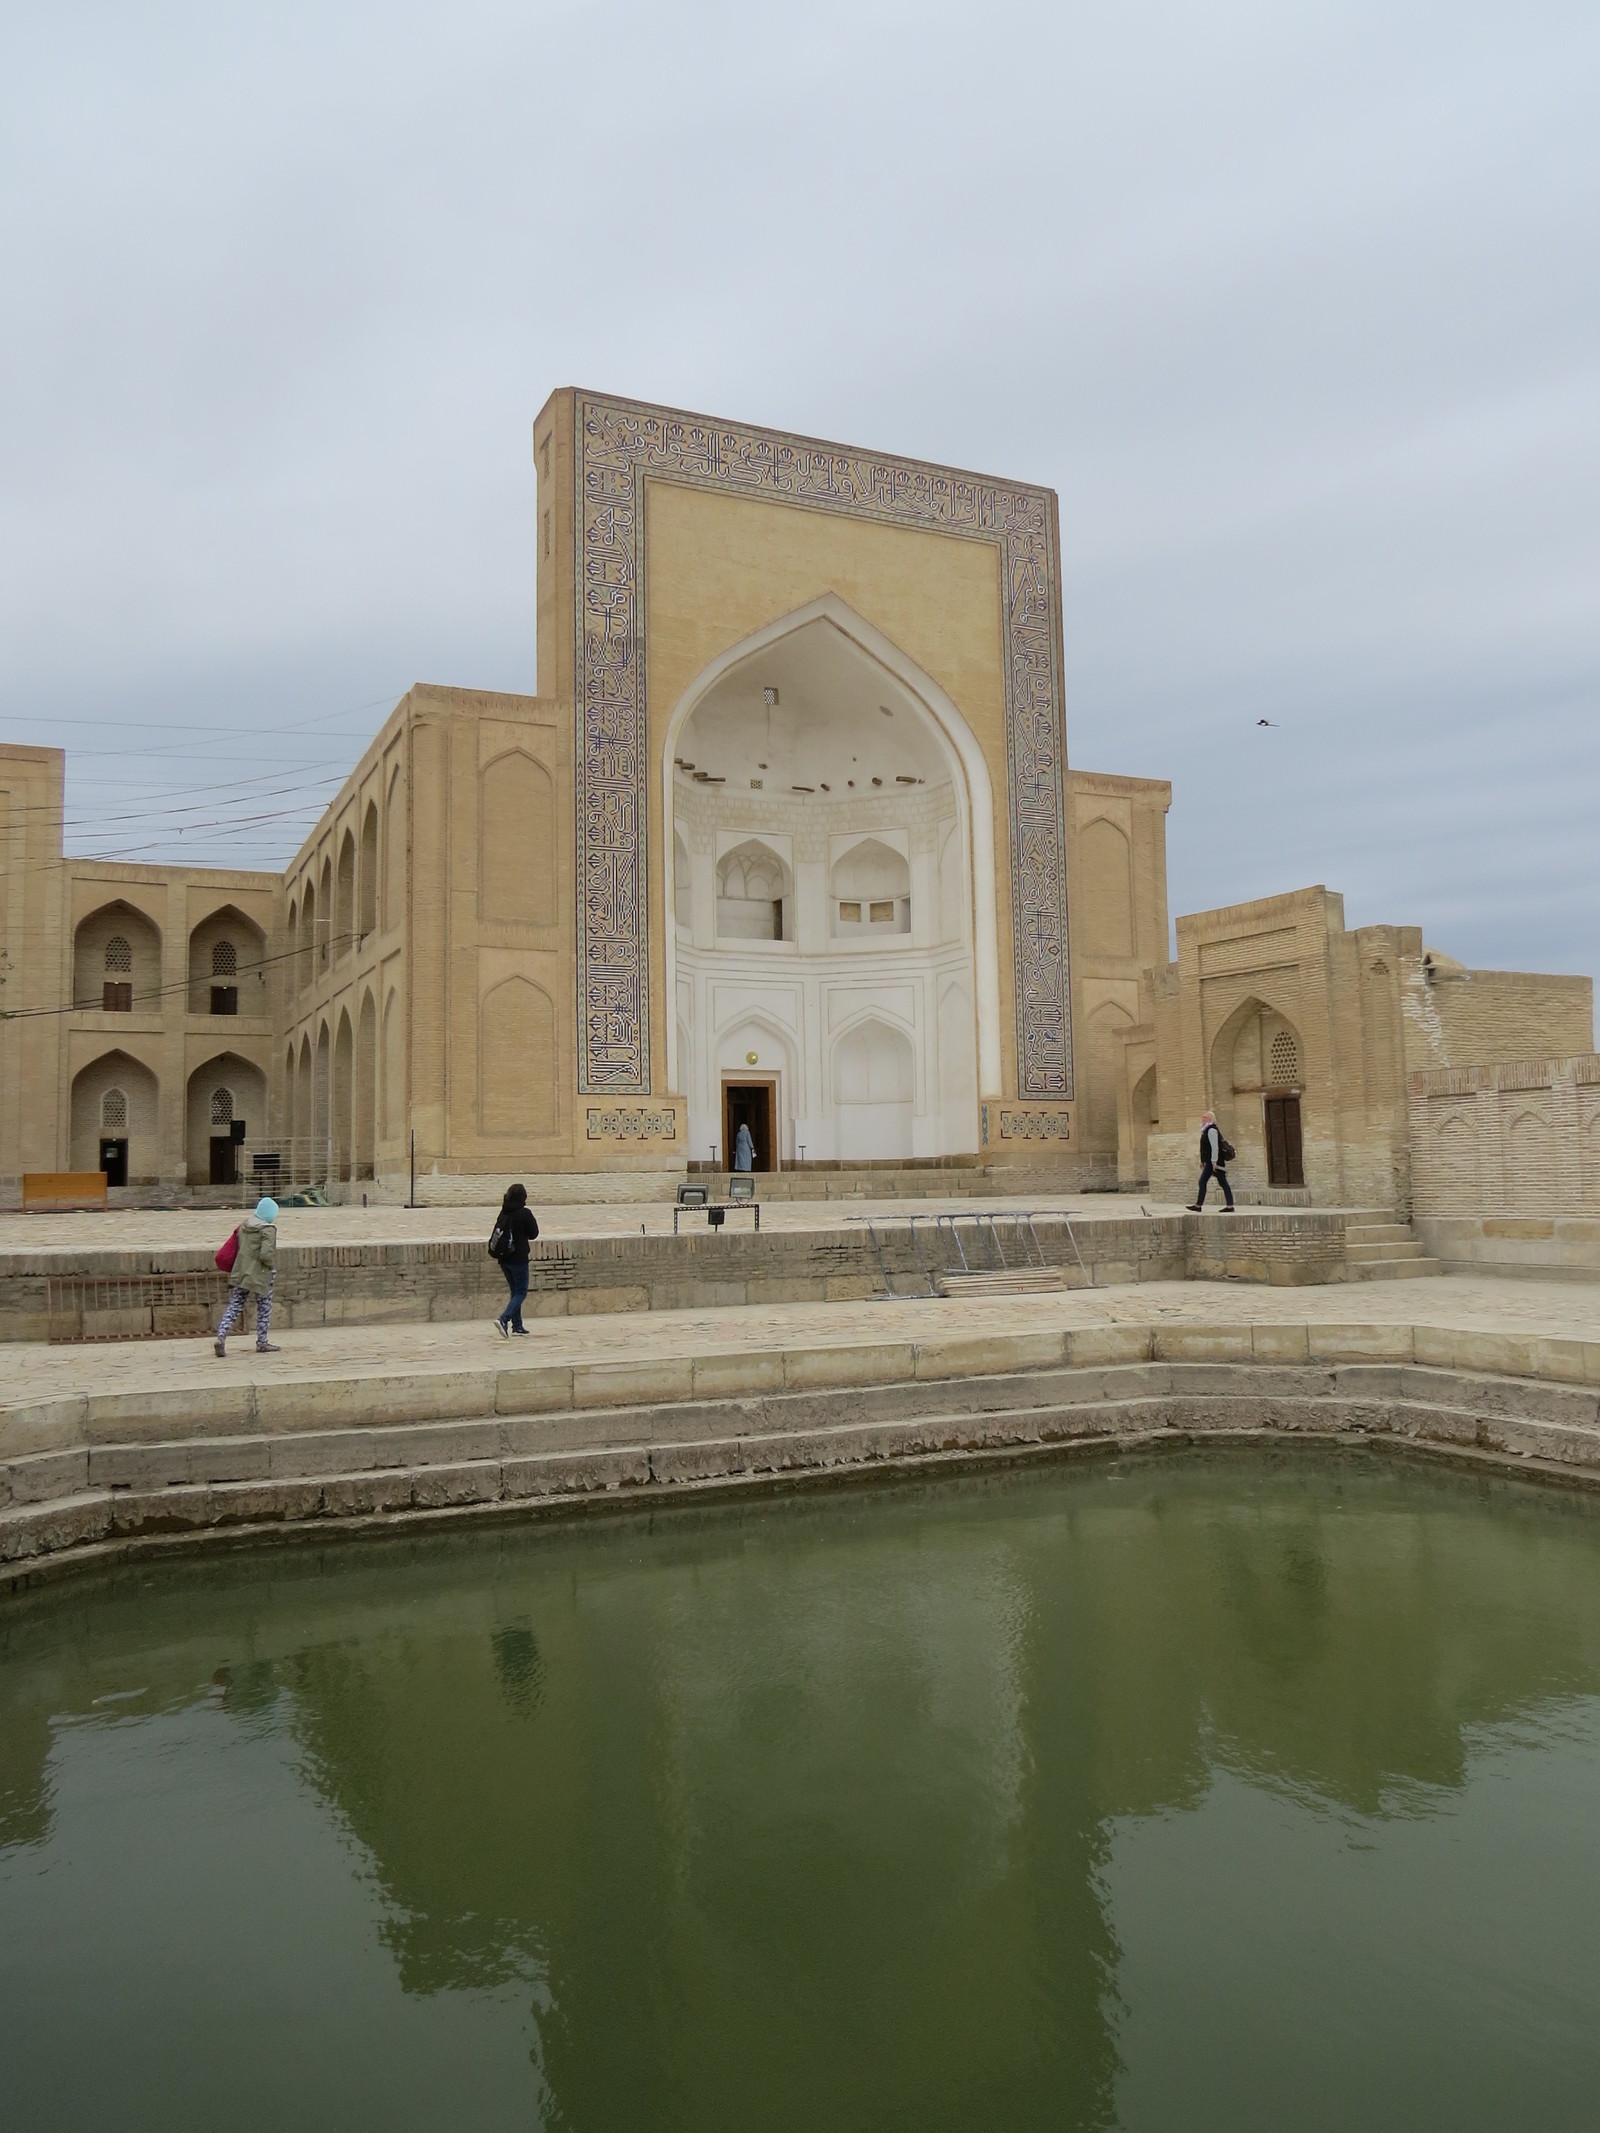 Chor-Bakr (Uzbekistan) - Longpost, sights, Travels, Bukhara, Uzbekistan, My